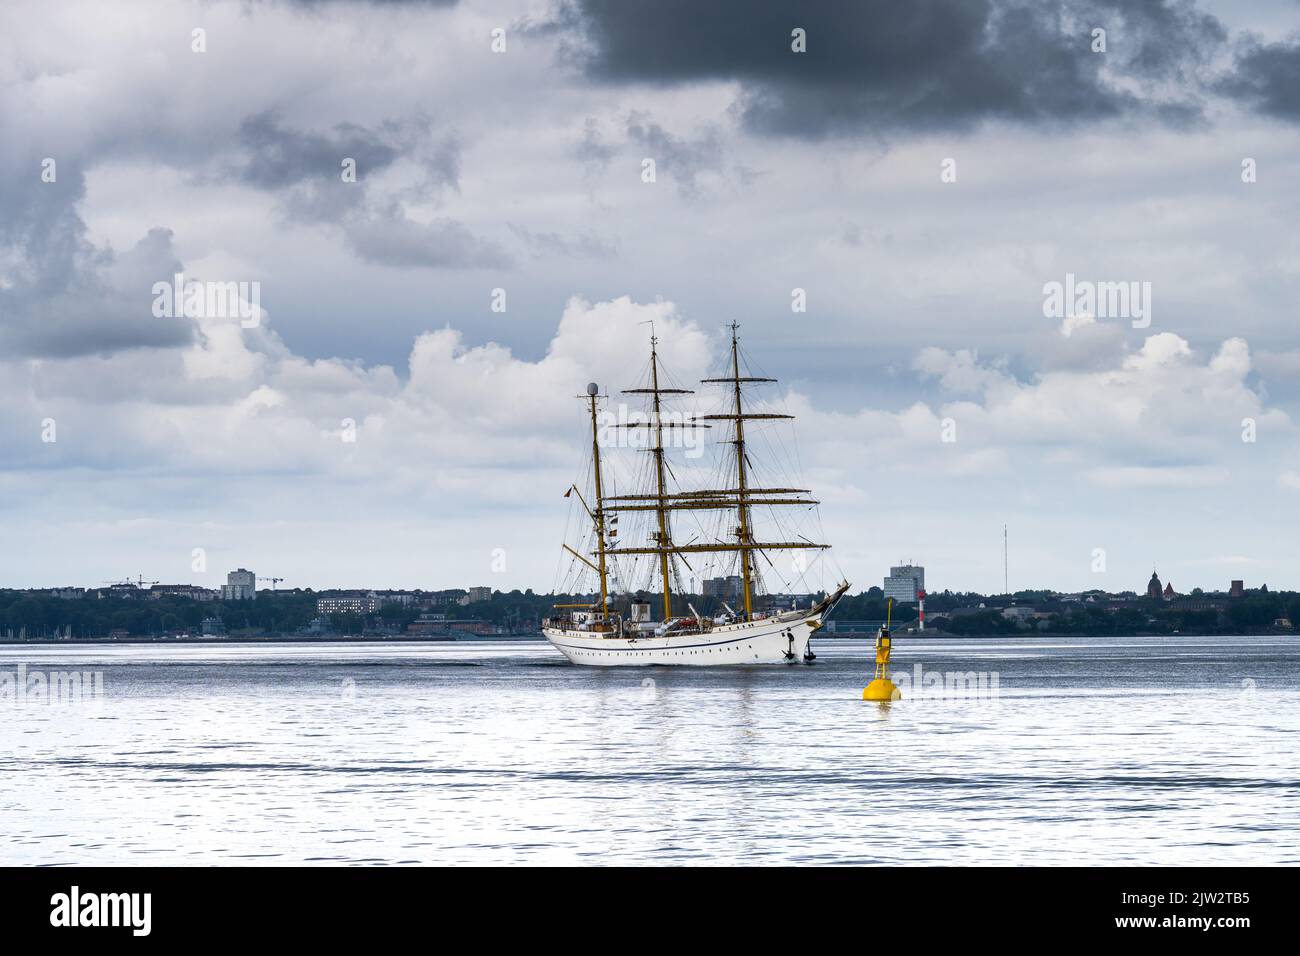 Das Segelschulschiff der Deutschen Marine die Bark Gorch Fock in der Kieler Förde mit dramatischem Himmel in Richtung Ostsee fahrend Foto de stock